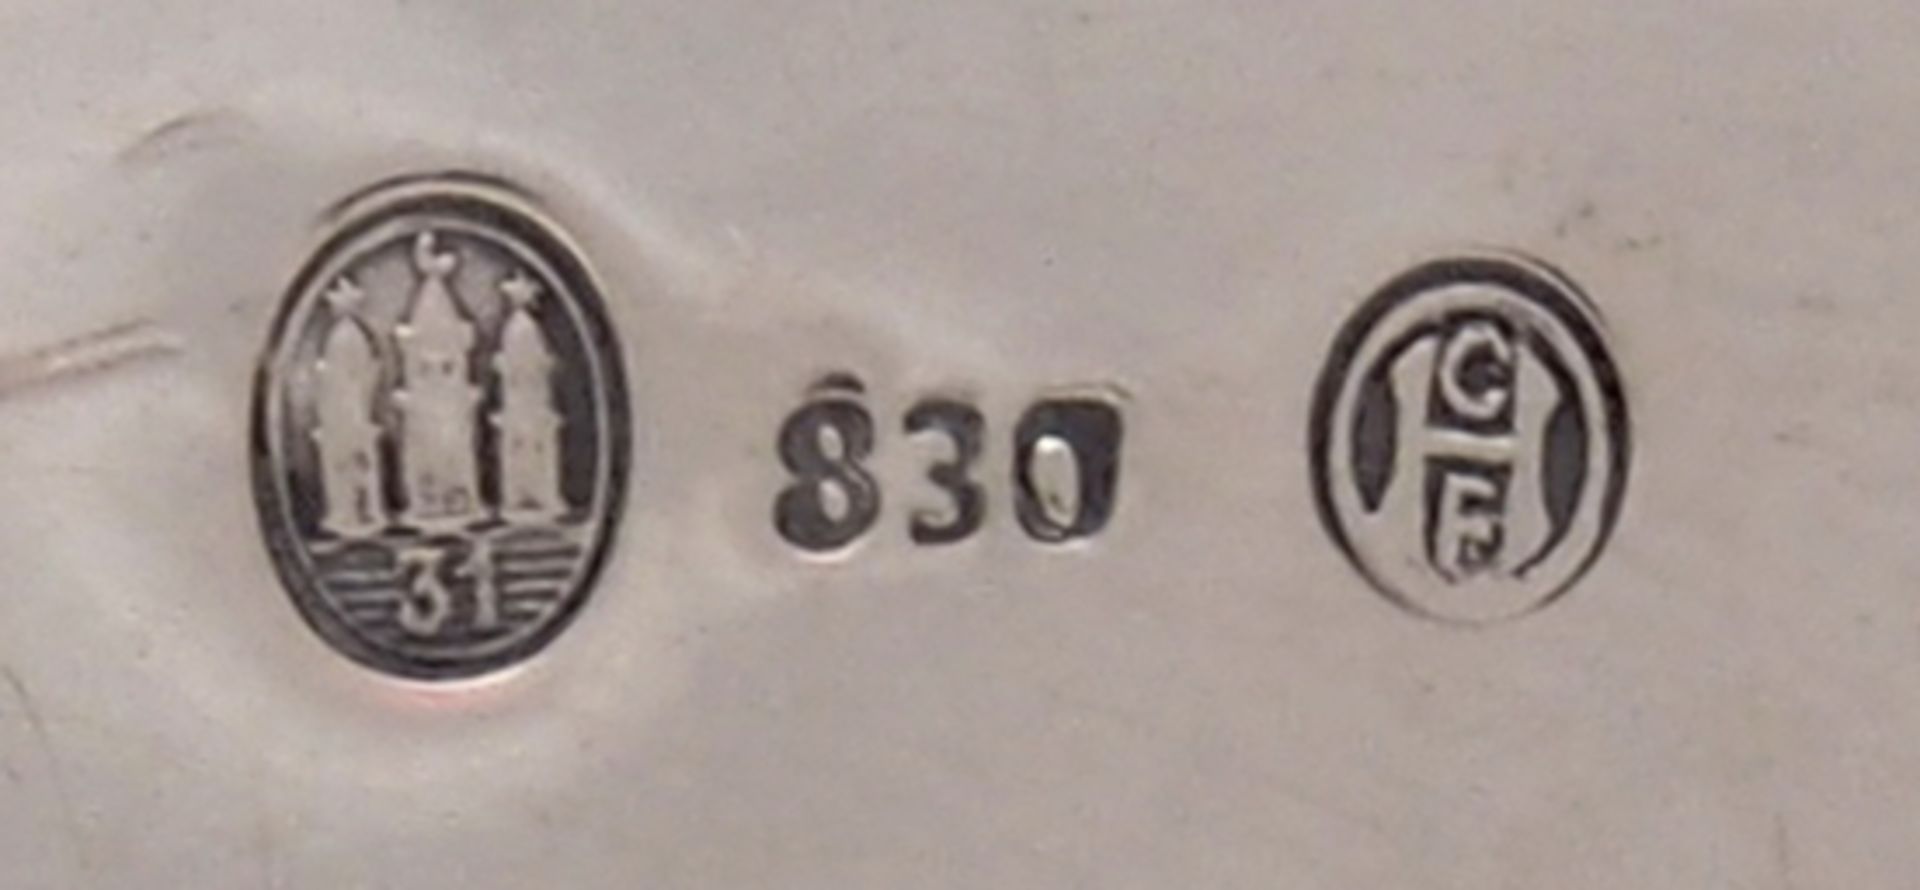 KaffeekernDänemark 1931. Silber 830. Barockform. Unter dem Boden punziert mit 830, Kontrollstempel - Bild 3 aus 3